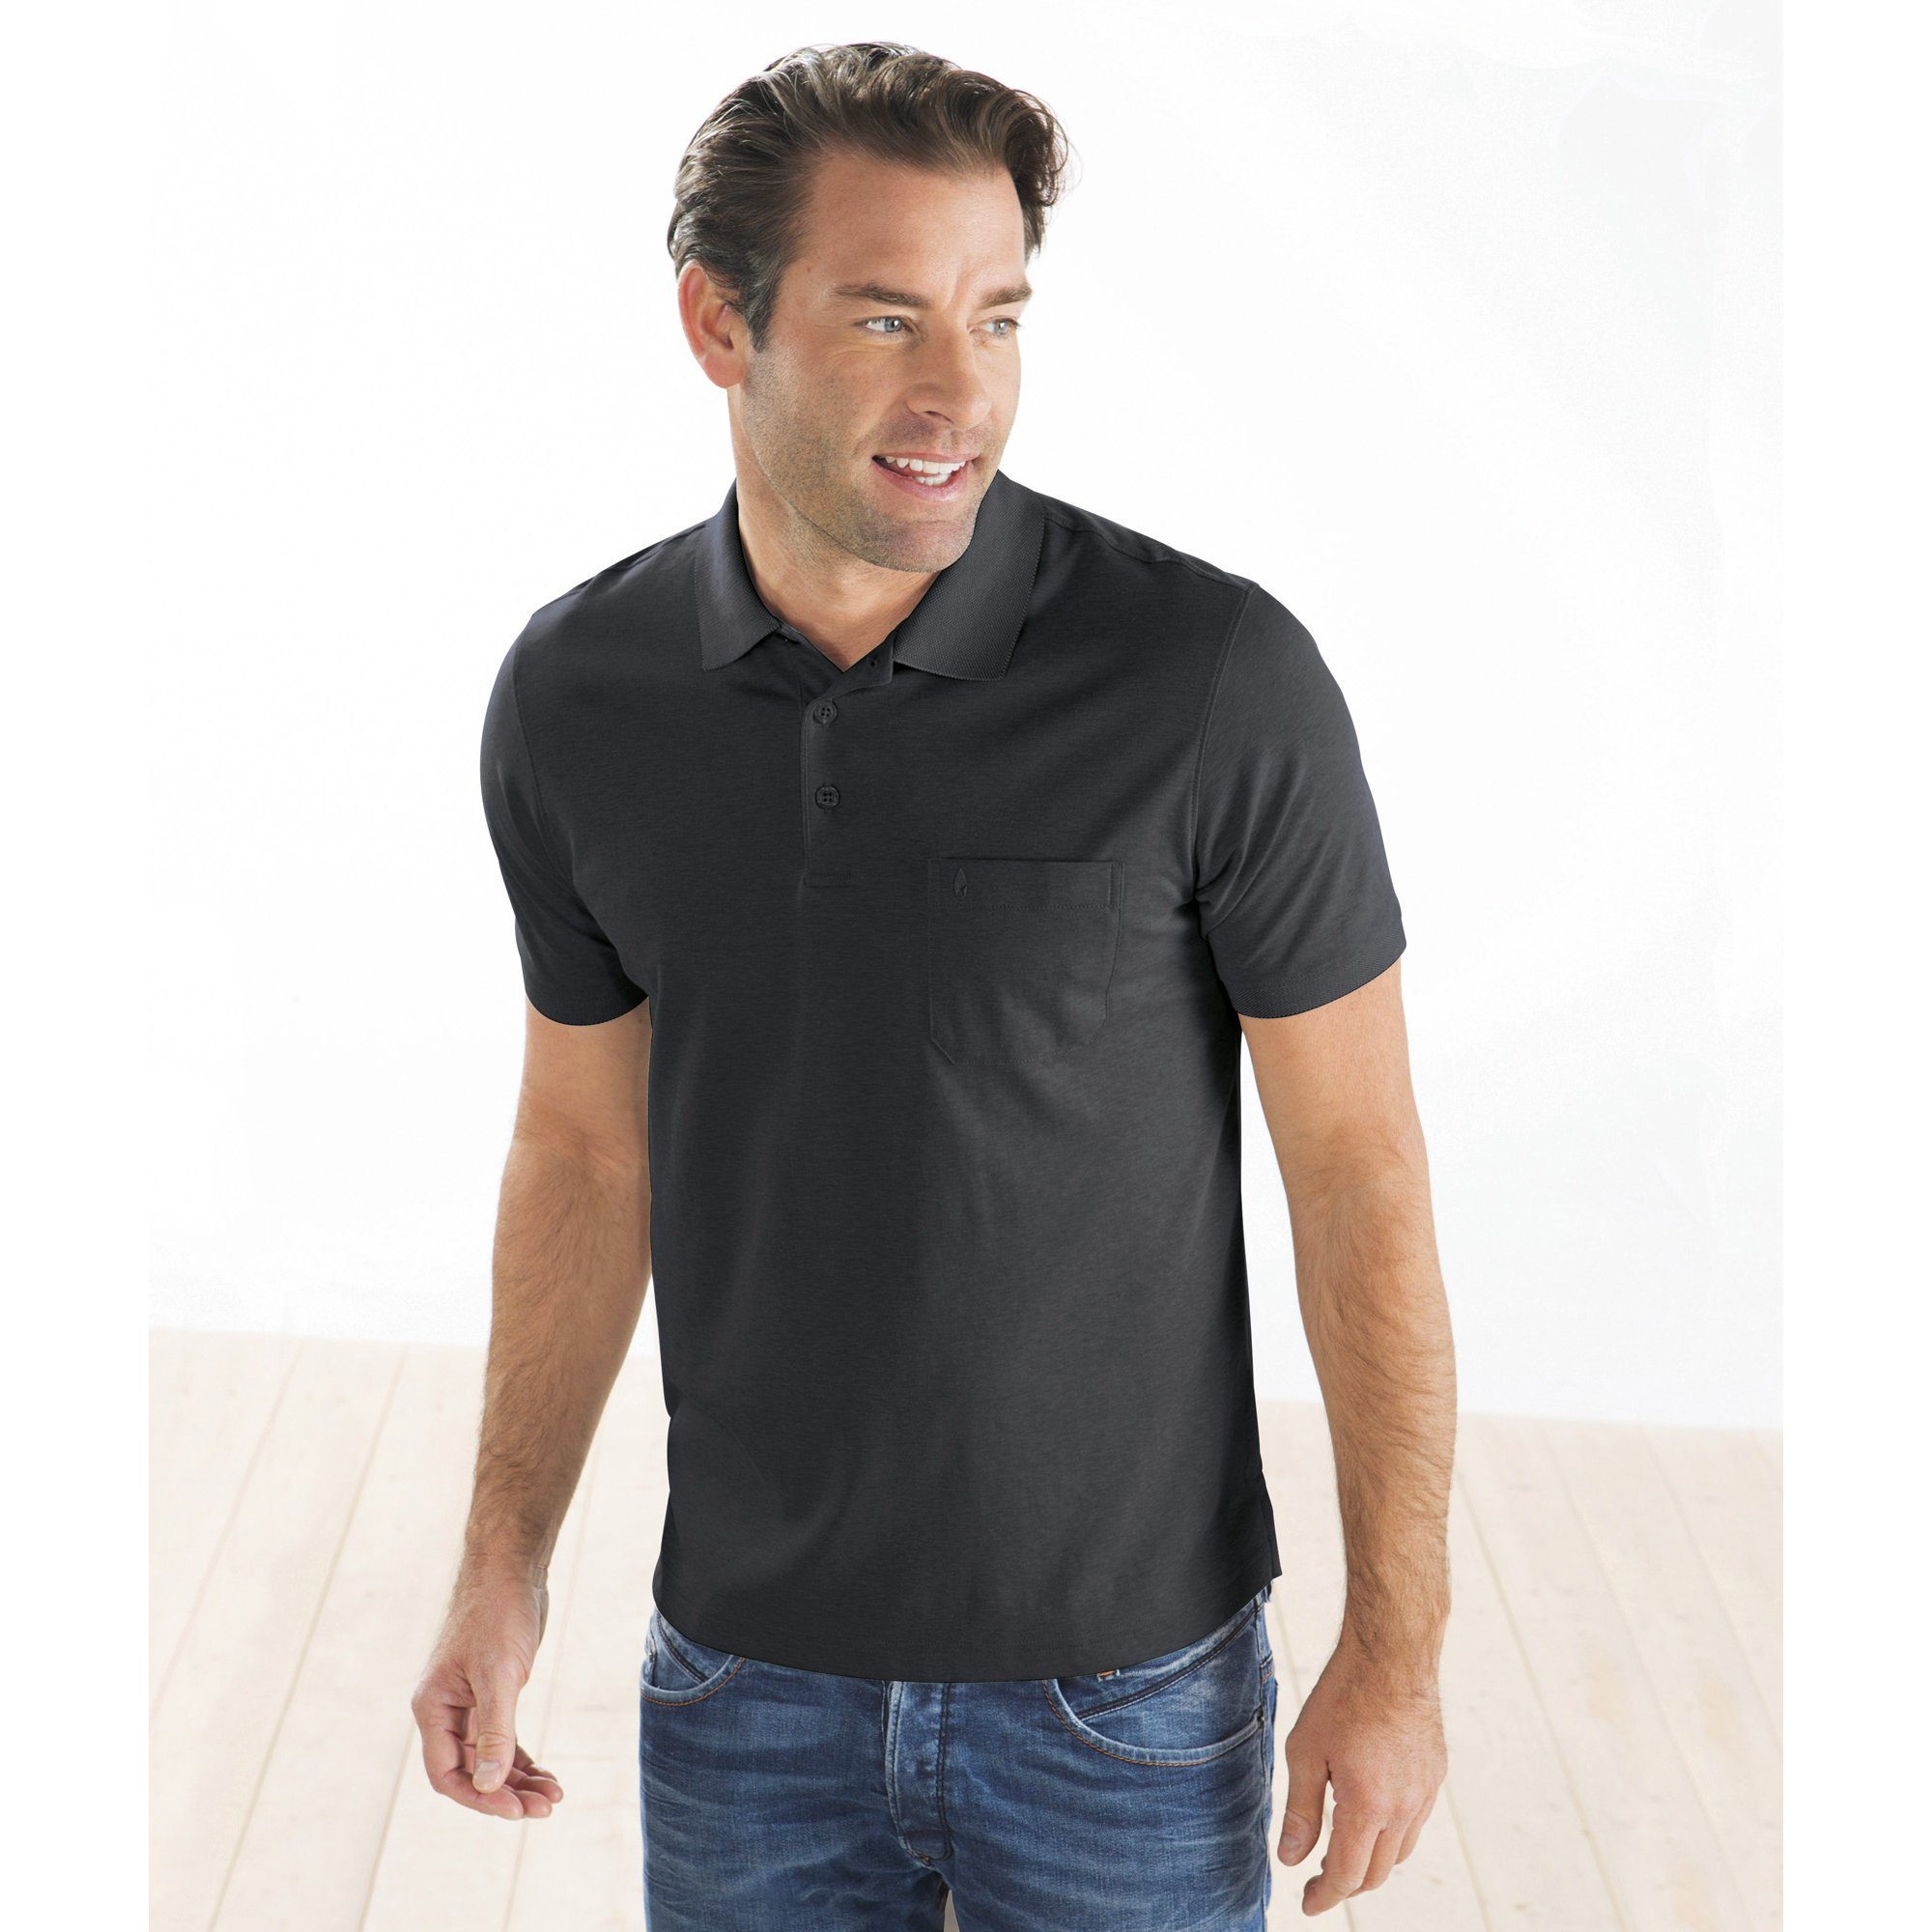 Uni Sweatshirt RAGMAN Herren-Poloshirt graphit